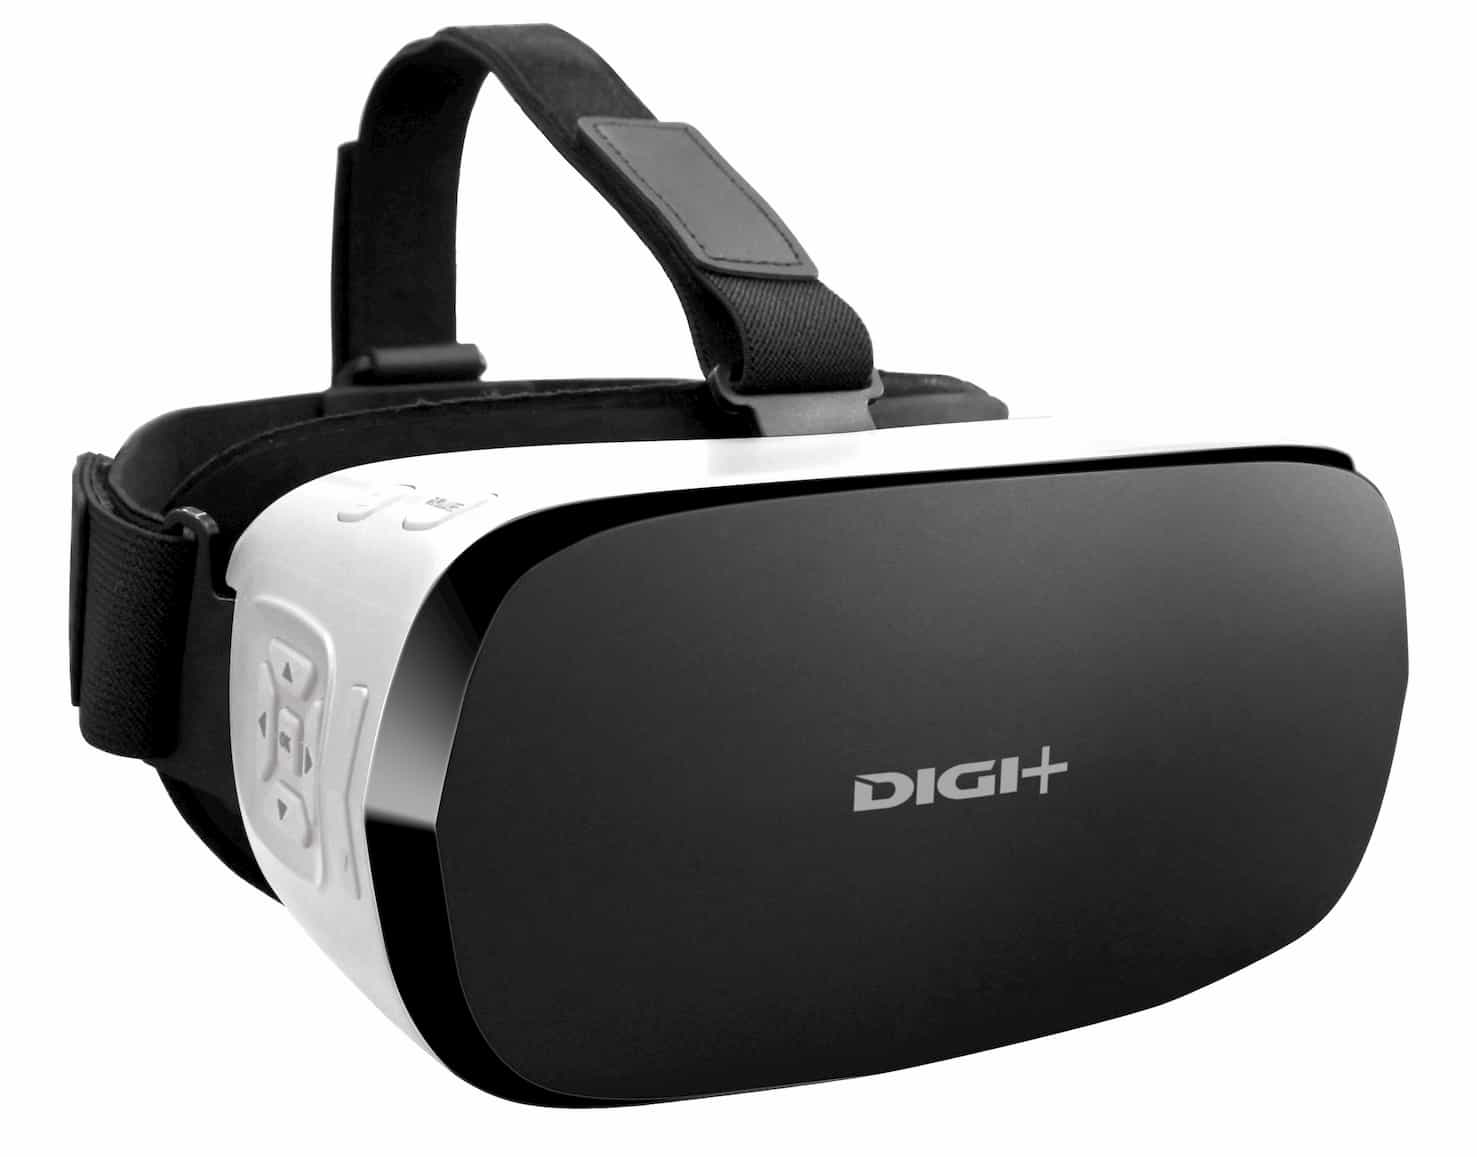 ヘッドマウントディスプレイ型VRゴーグル(DIGI+ DGP-VRG01)を発売 メイン画像